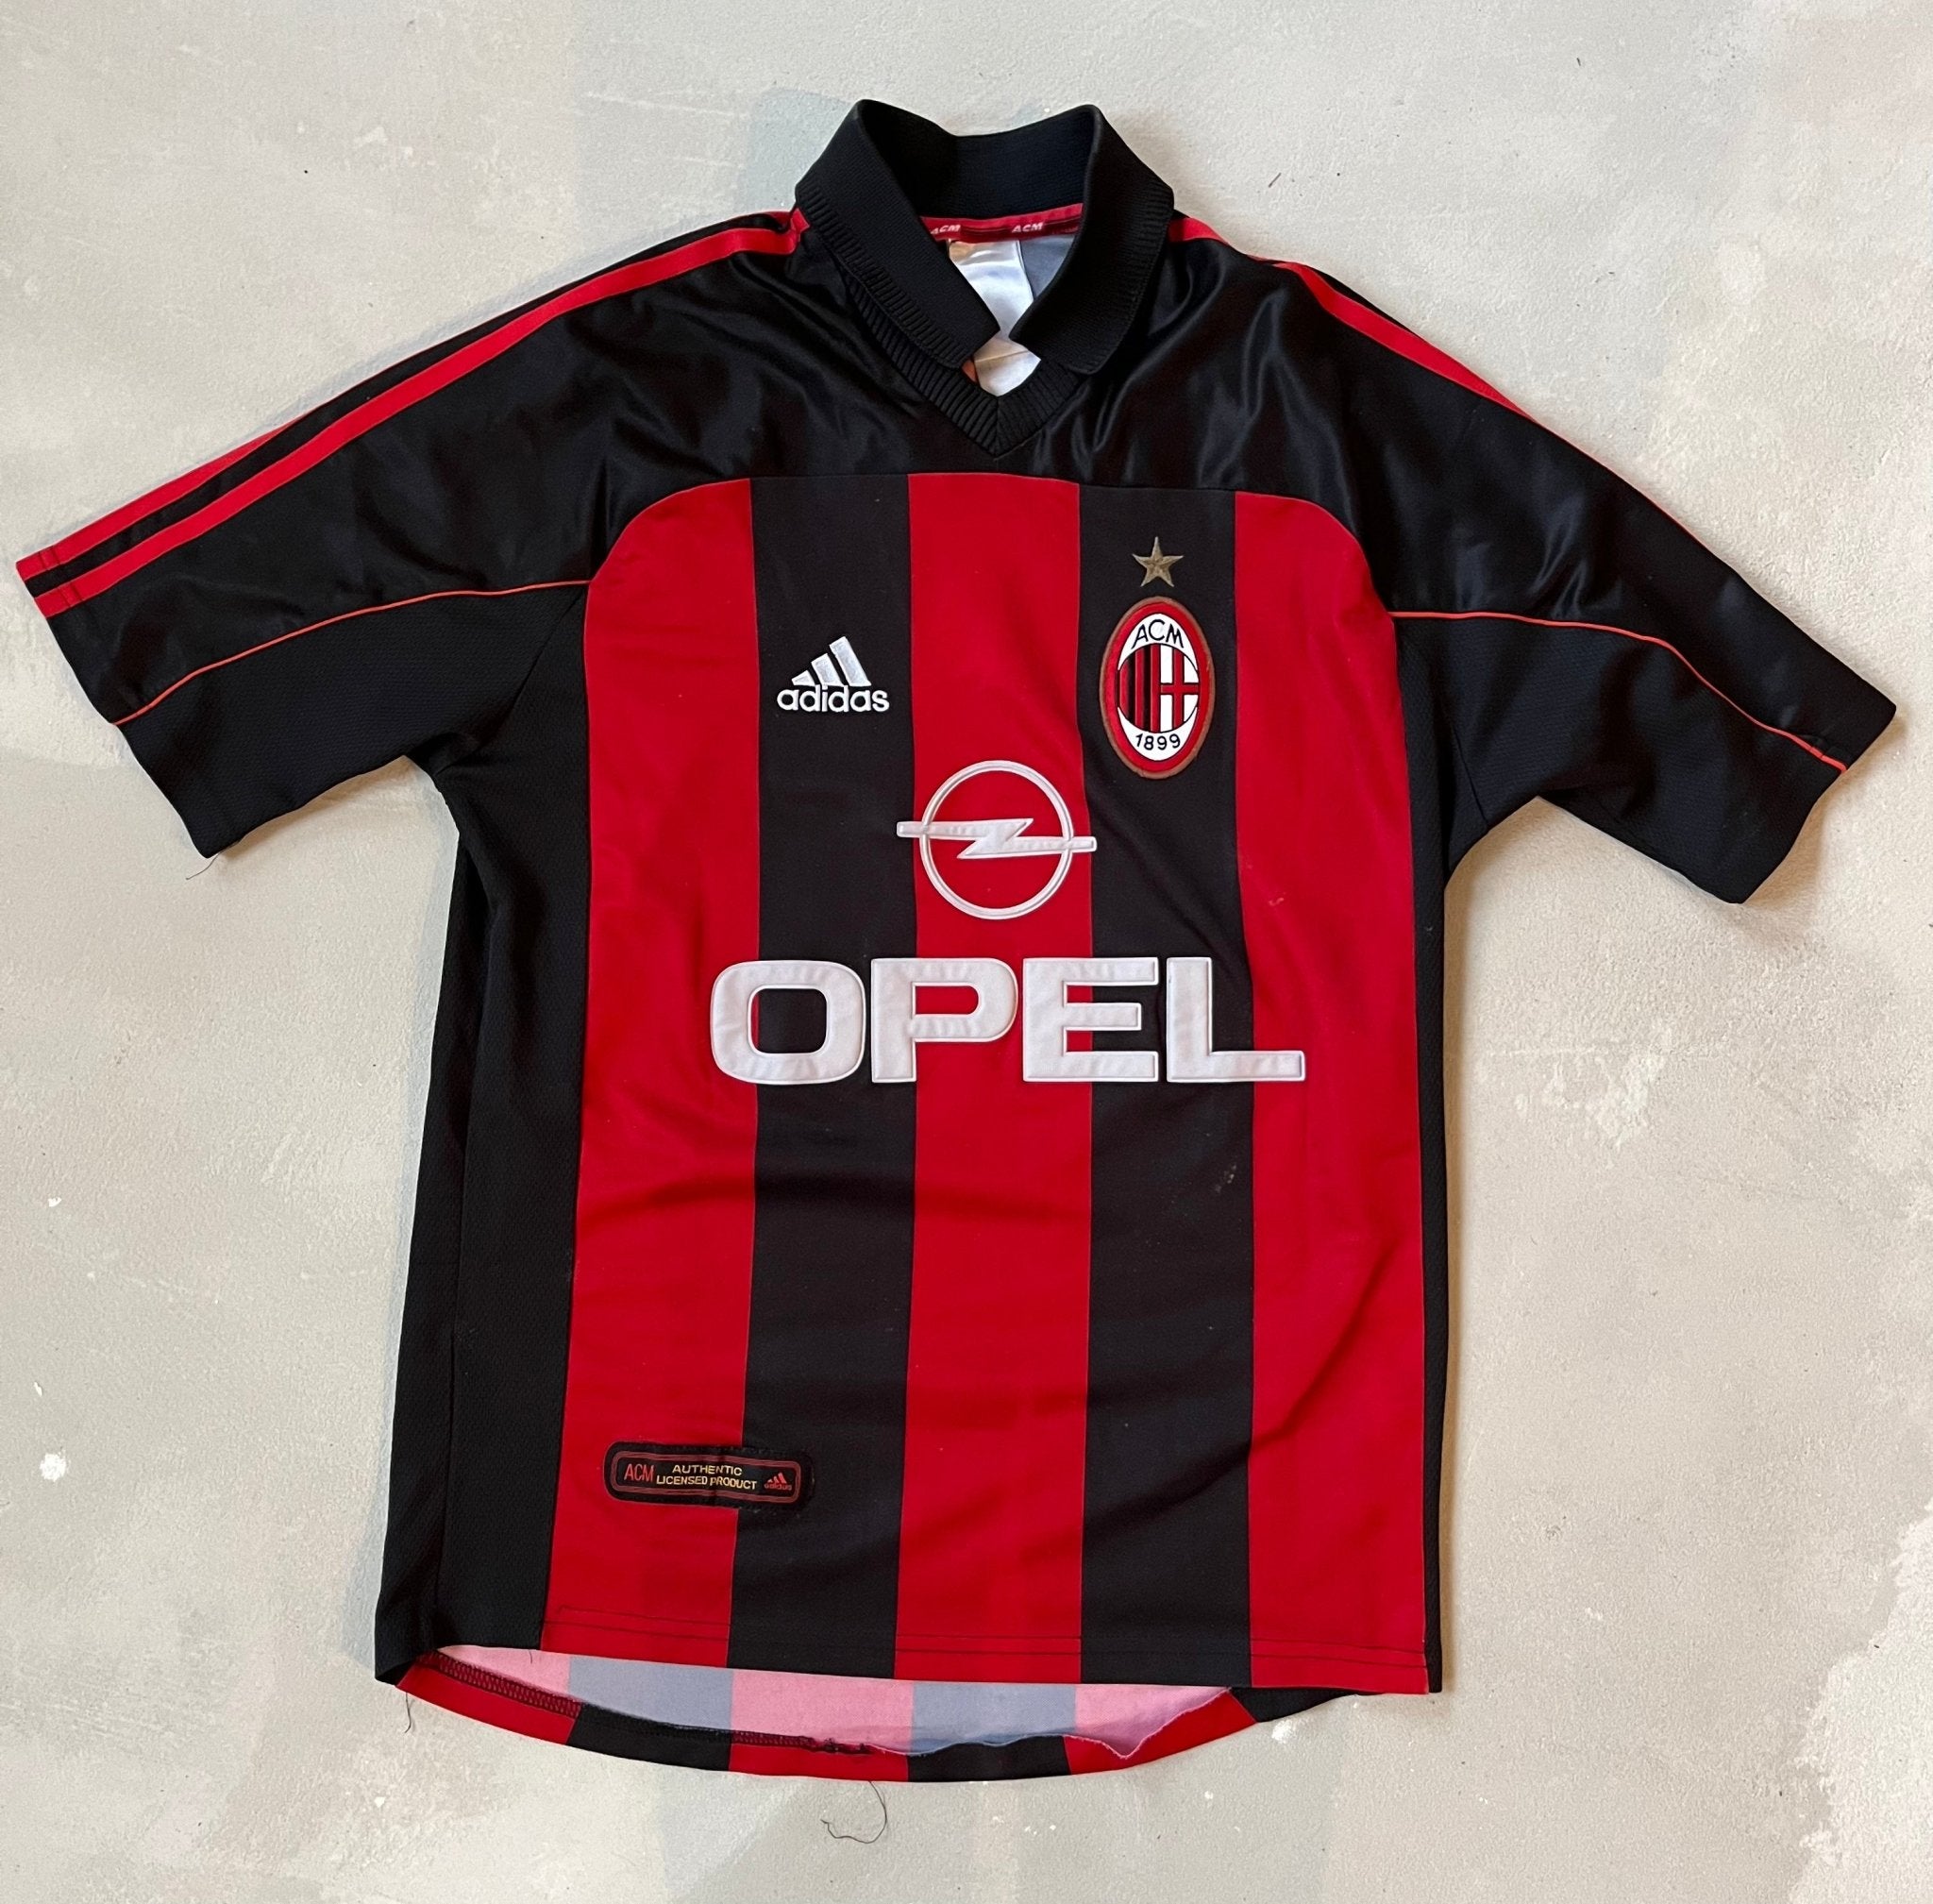 AC Milan 2001/02 Vintage Home Jersey